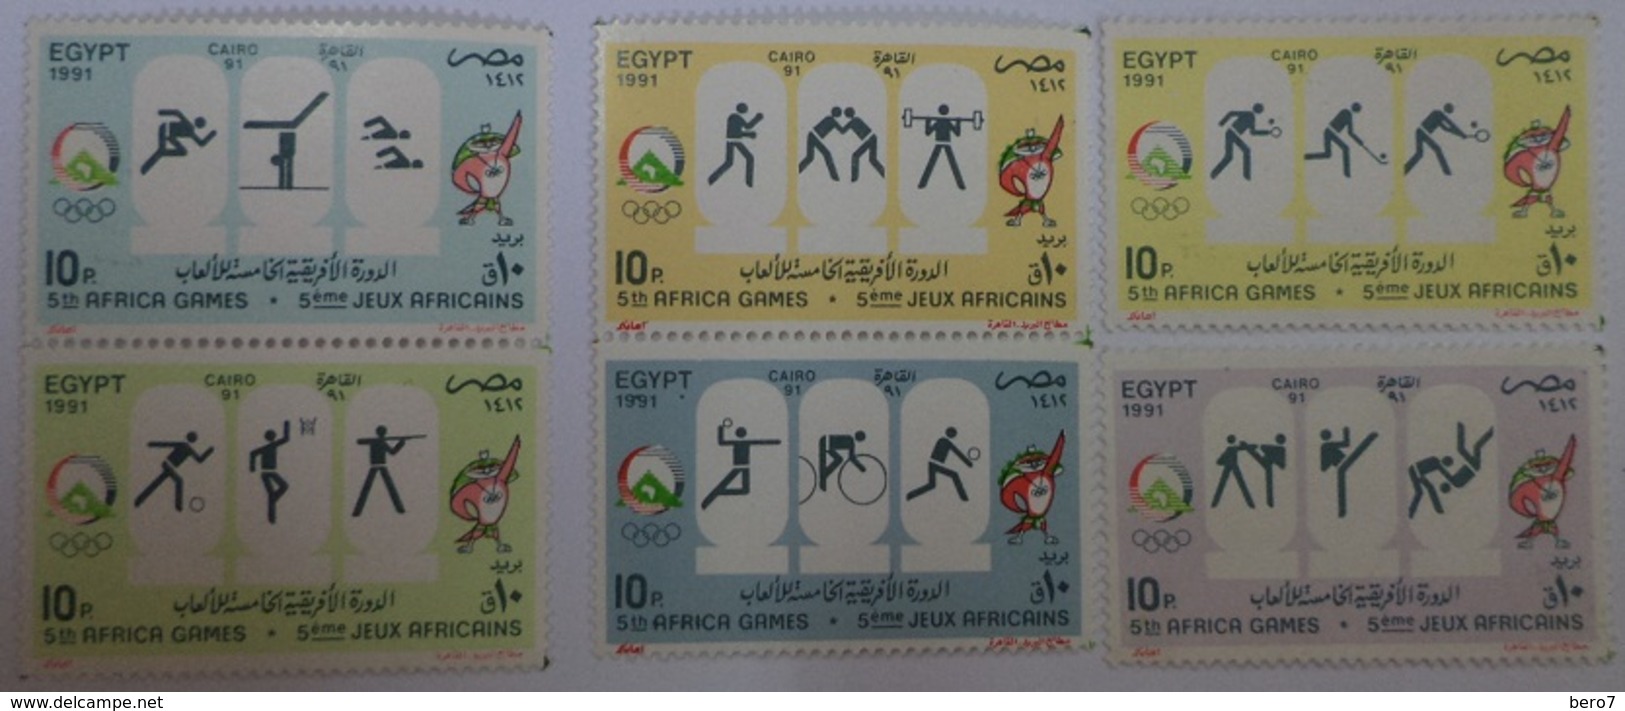 Egypt Stamp 1991 The 5th African Games, Cairo [MNH] (Egypte) (Egitto) (Ägypten) (Egipto) (Egypten - Nuevos